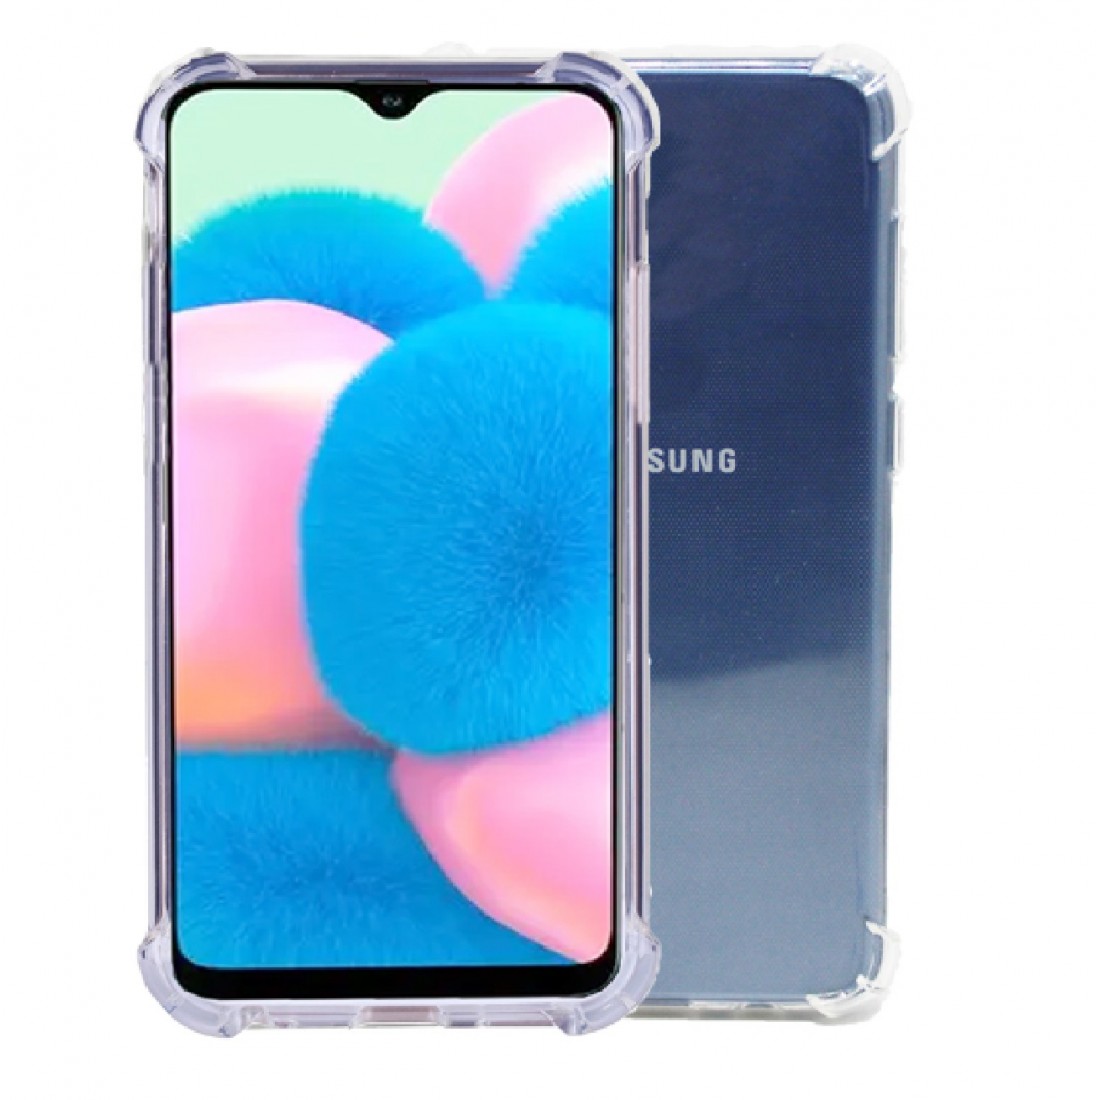 Lee fout Waarschijnlijk Samsung Galaxy A20 silicone Doorzichtig Back cover Telefoonhoesje